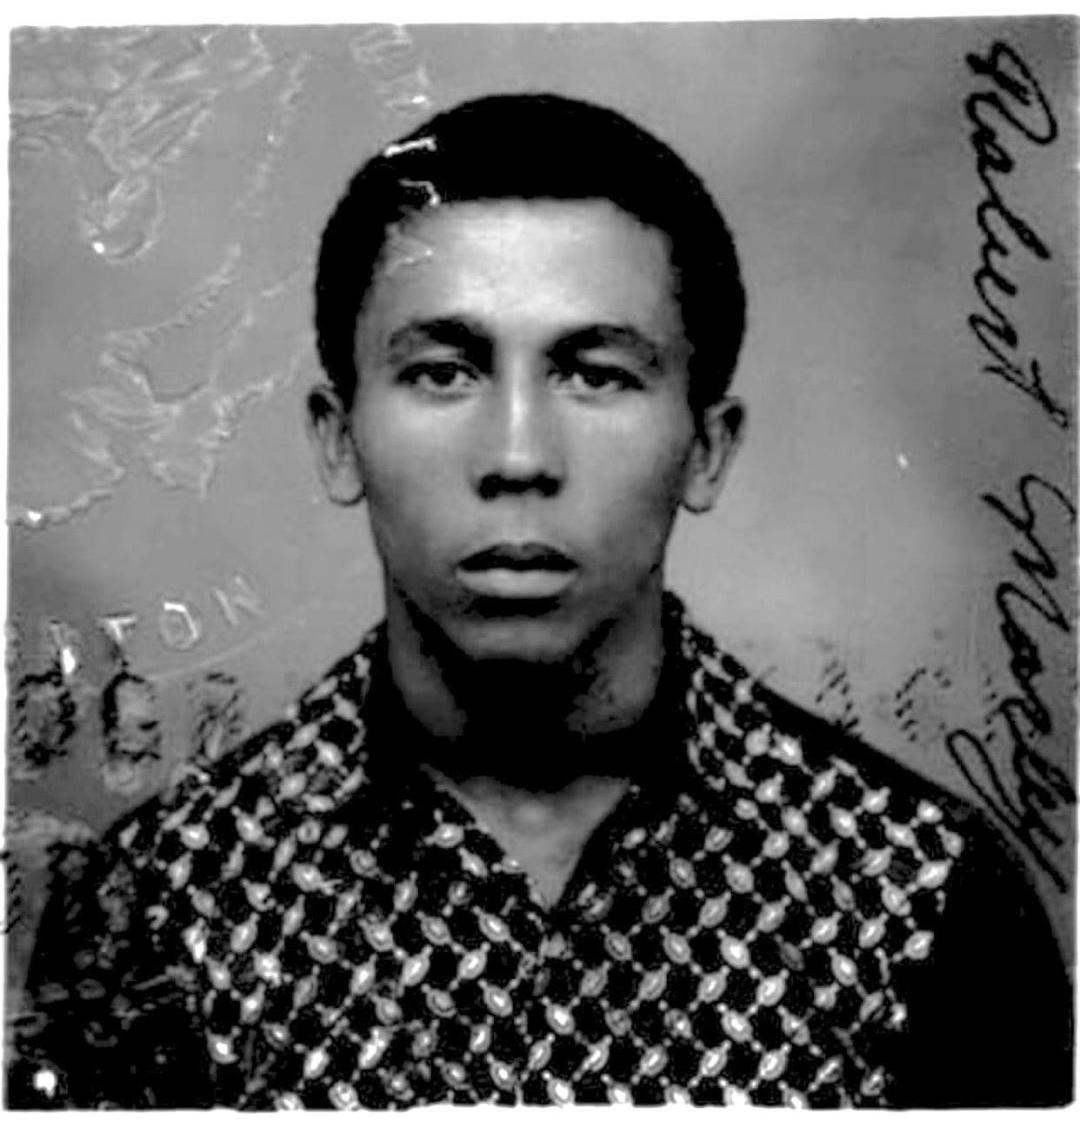 Rare Bob Marley Passport Photos